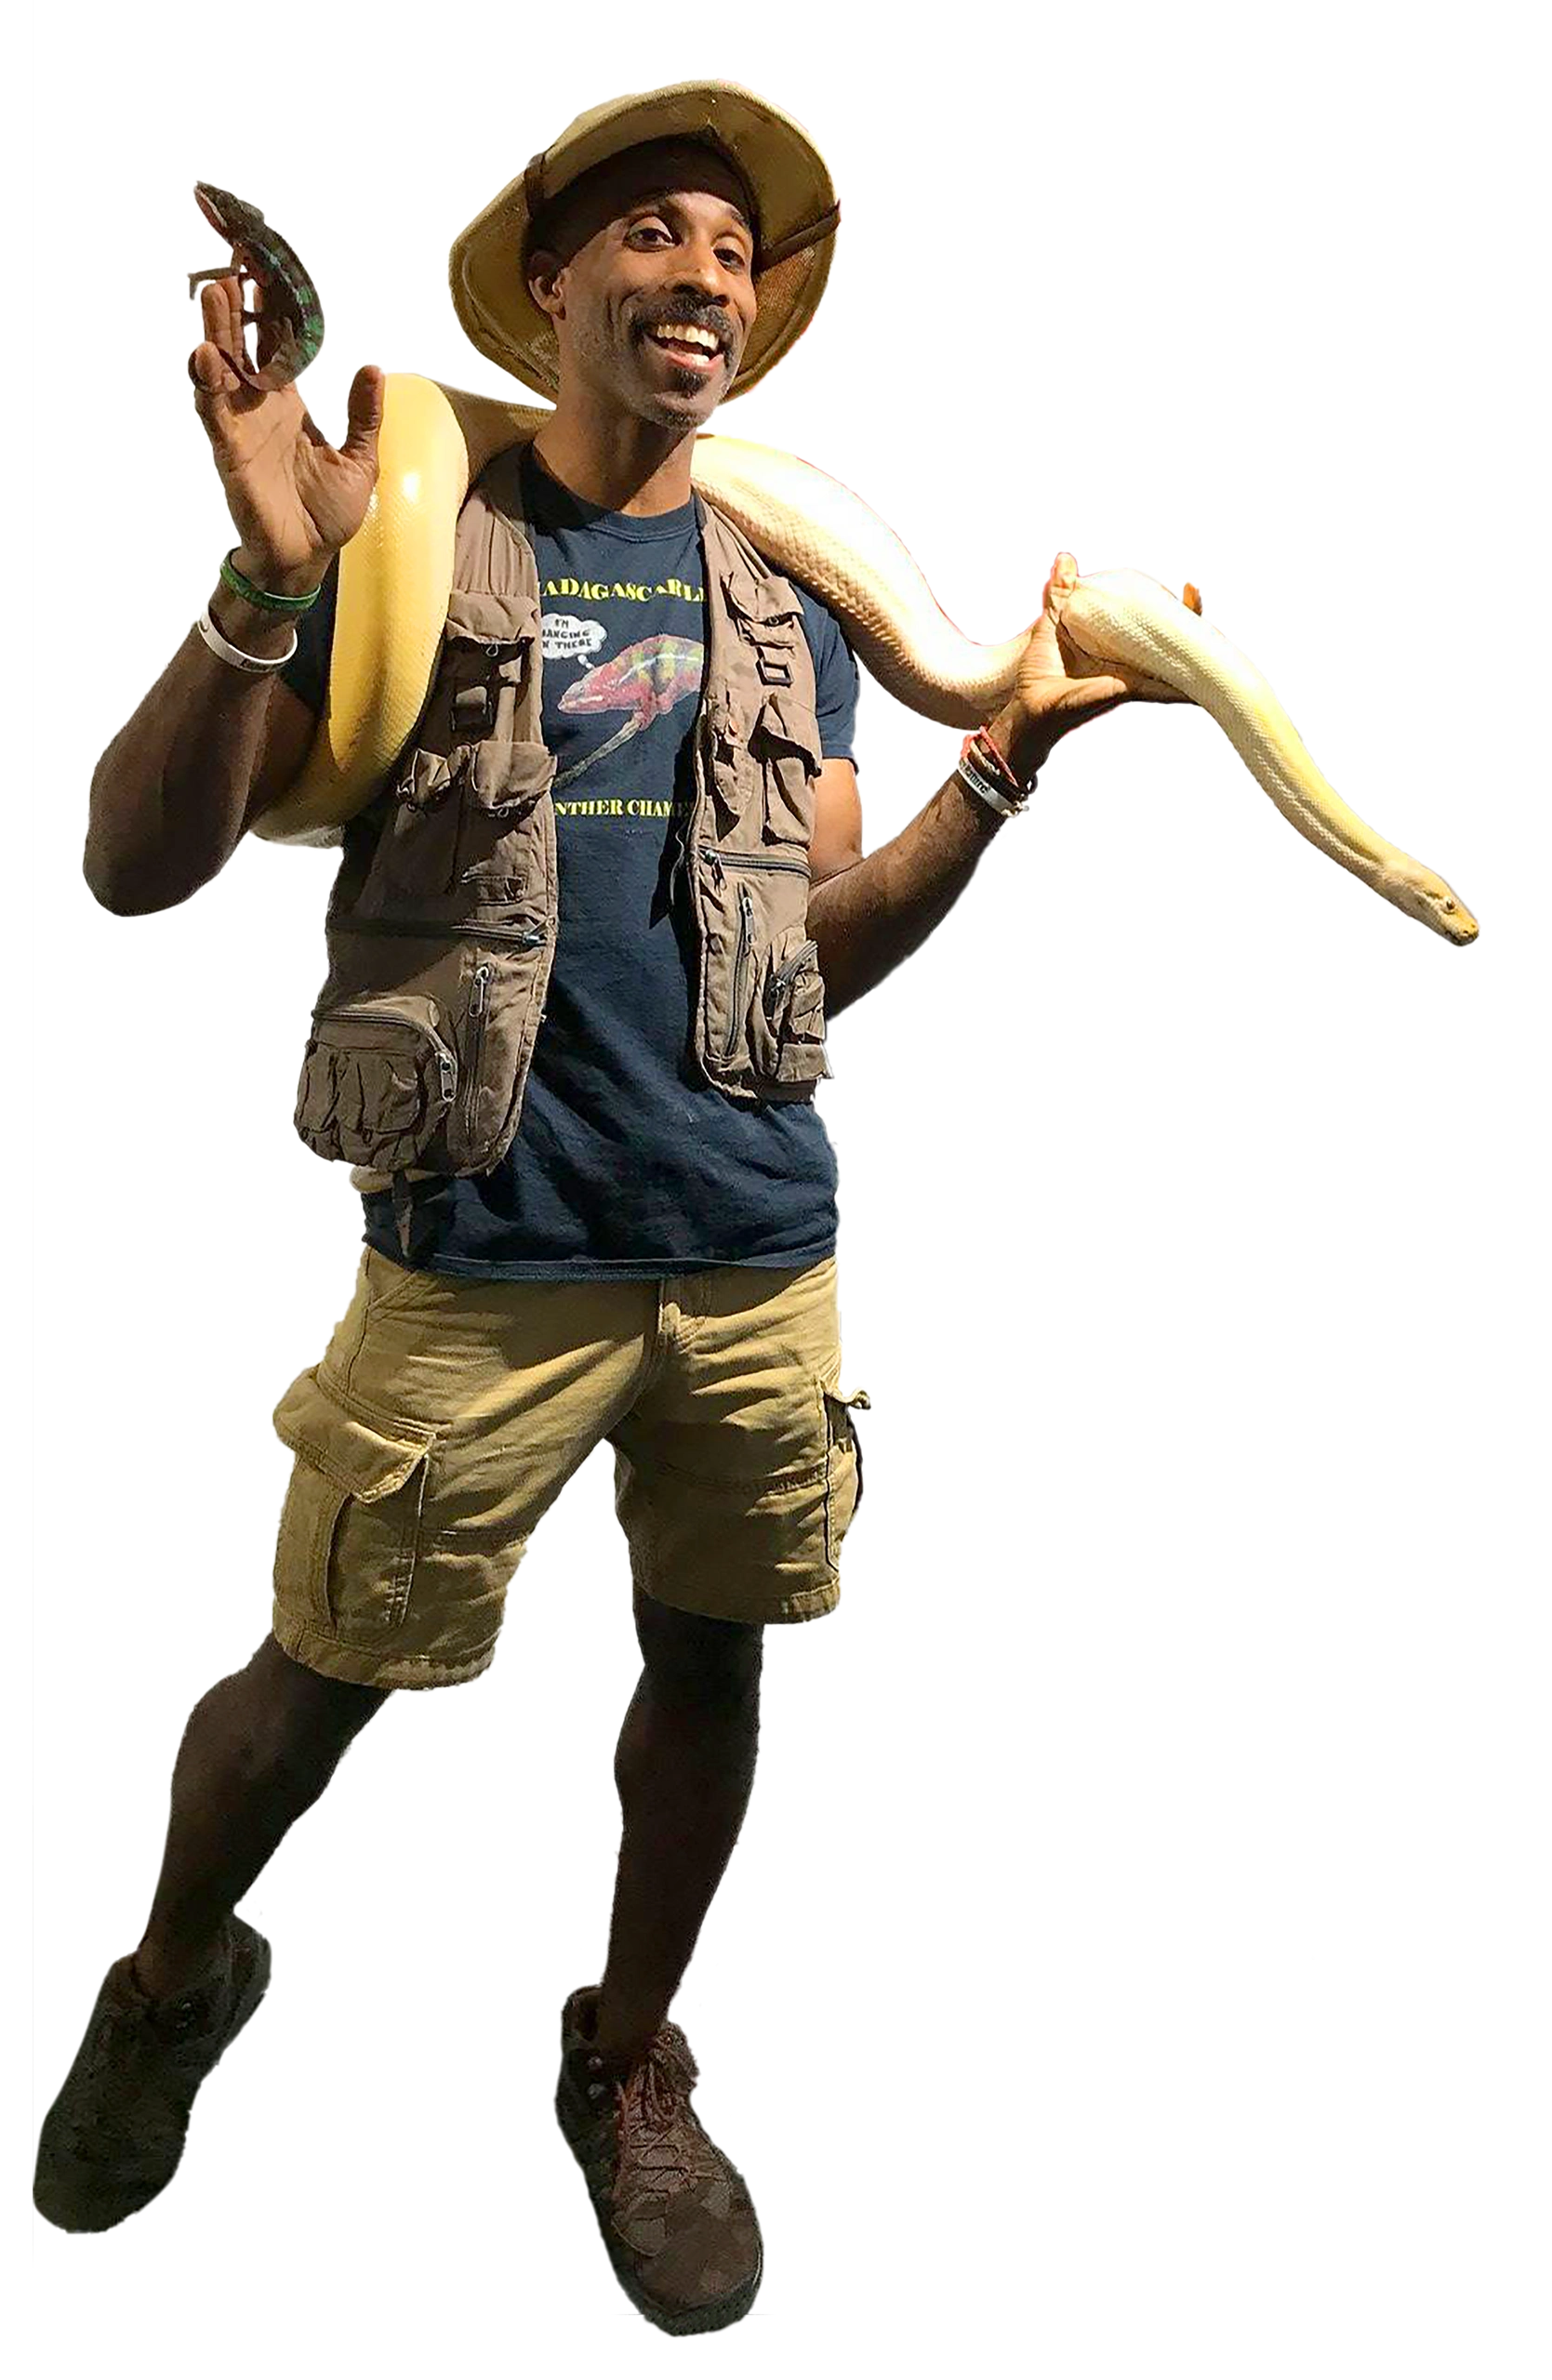 Erik with snake